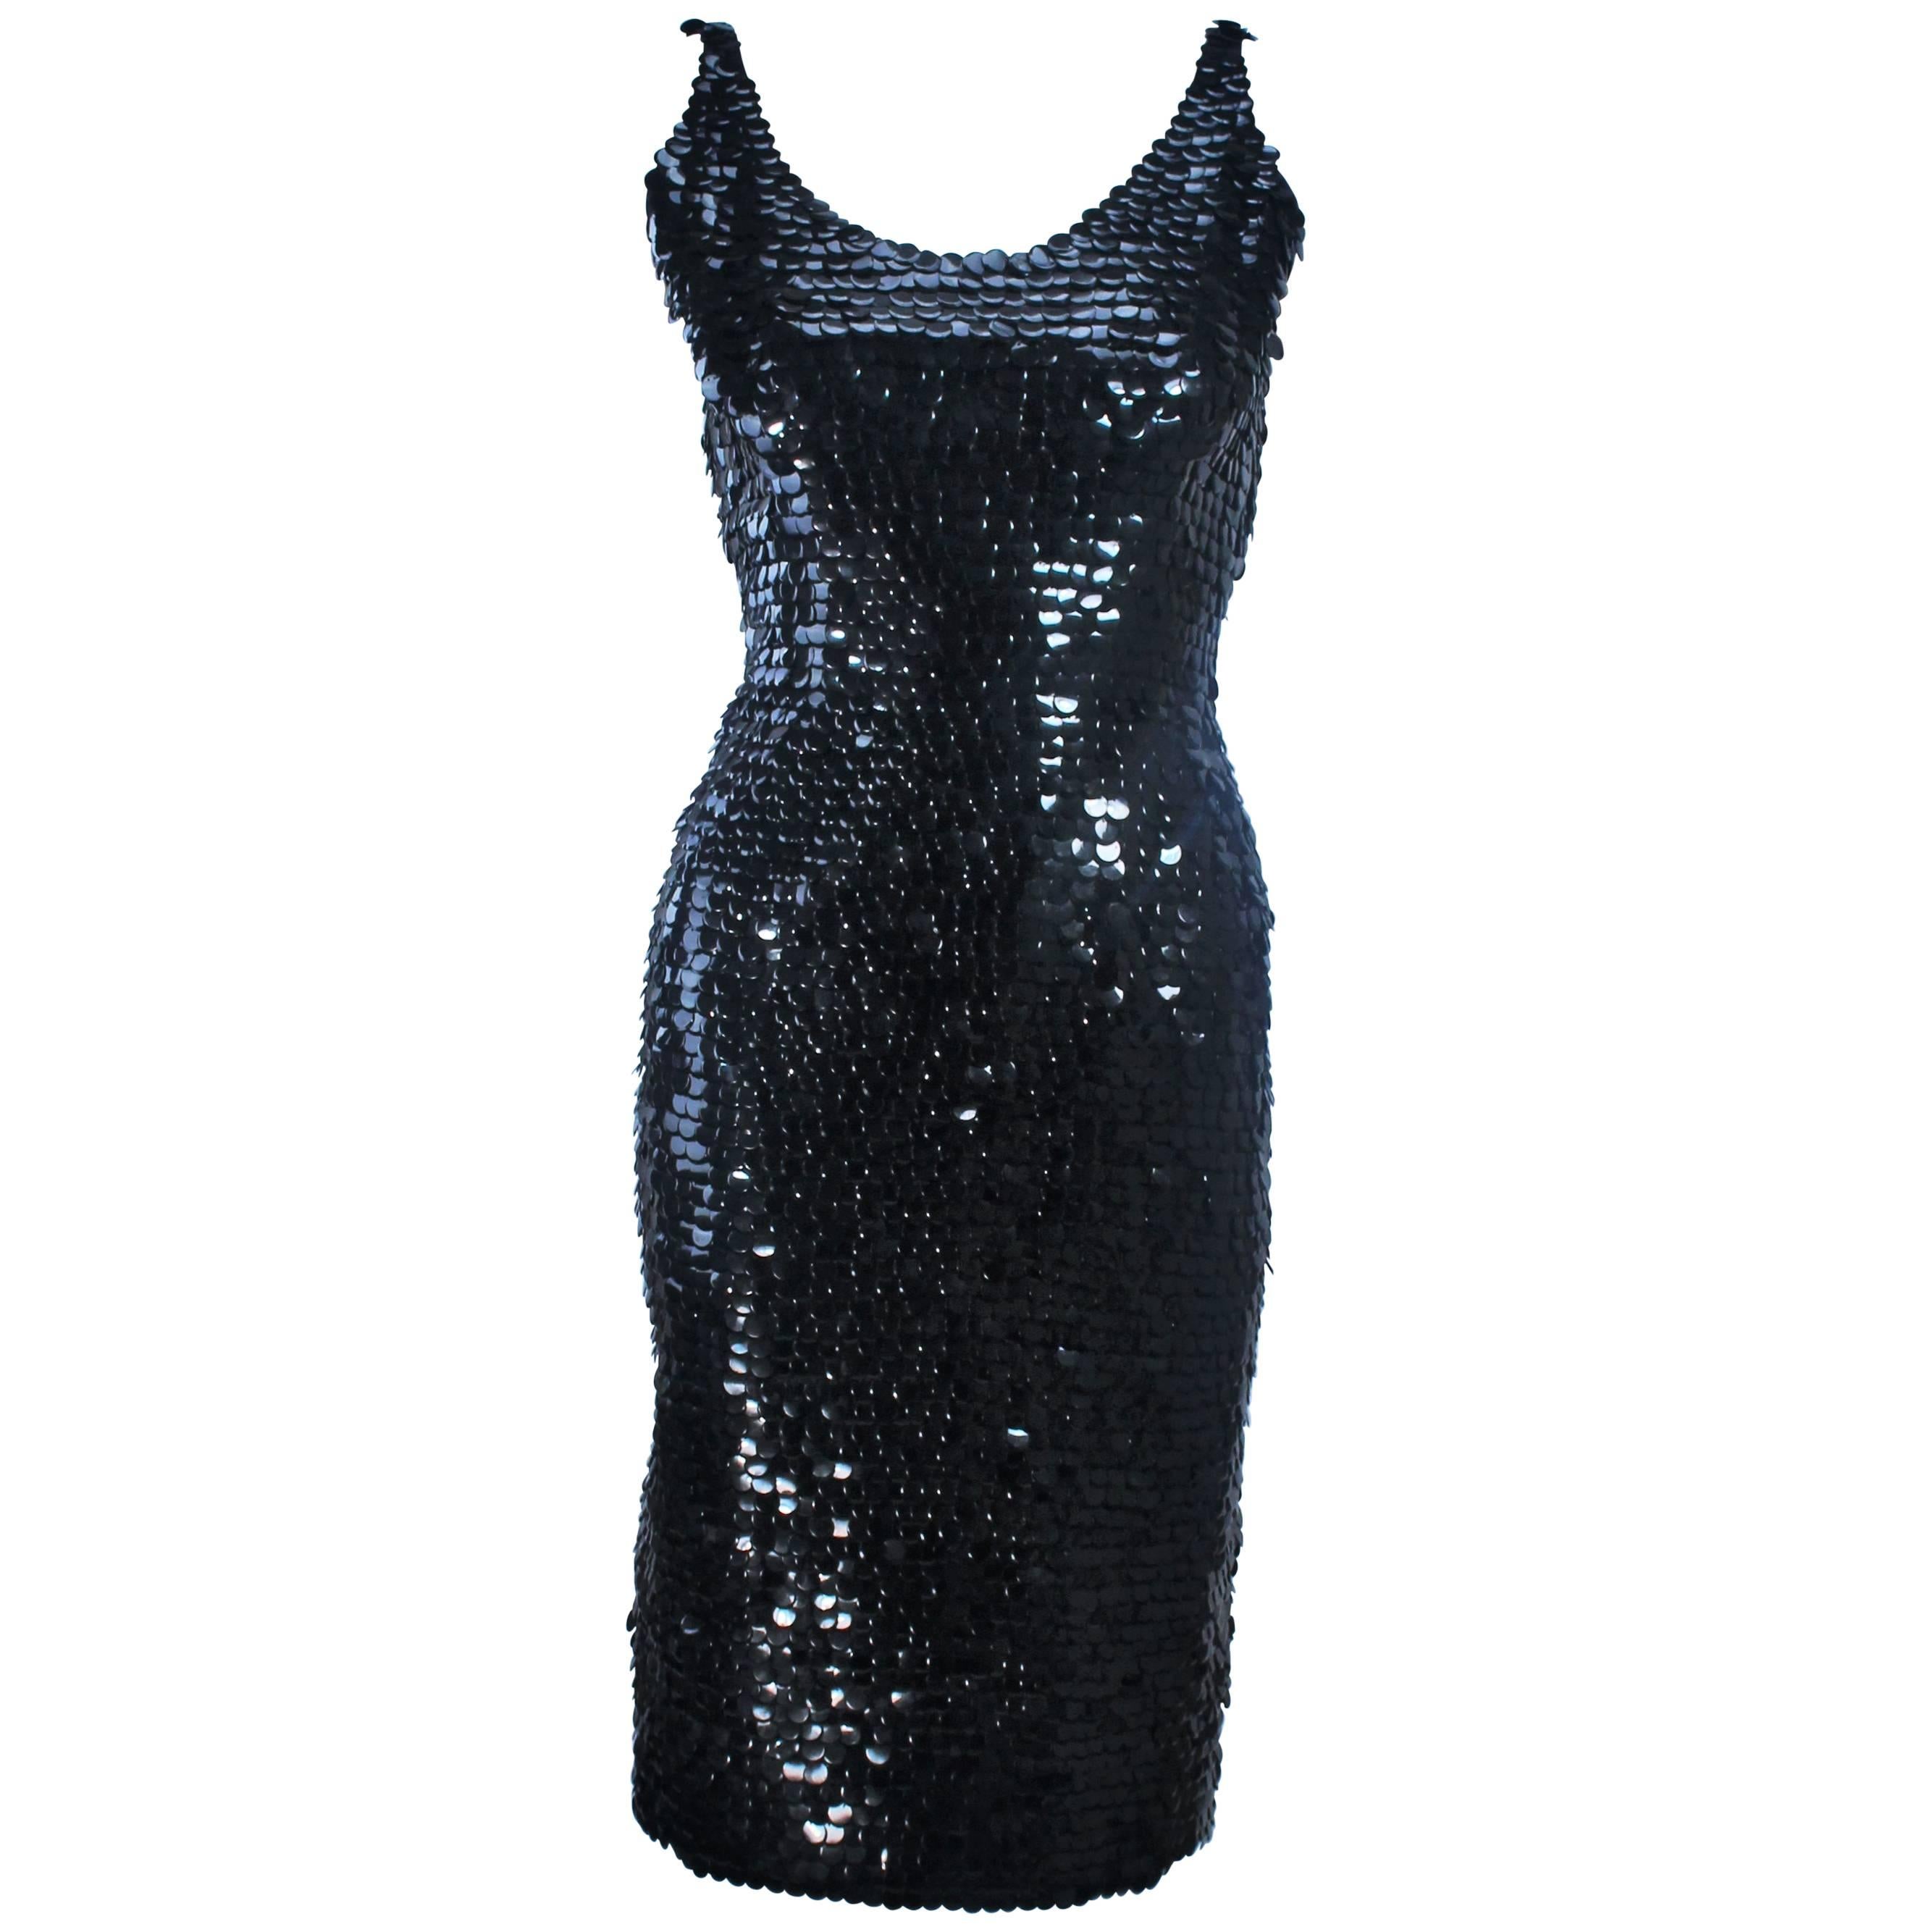 1960s Black Plastic Sequin Cocktail Dress Size 6 For Sale